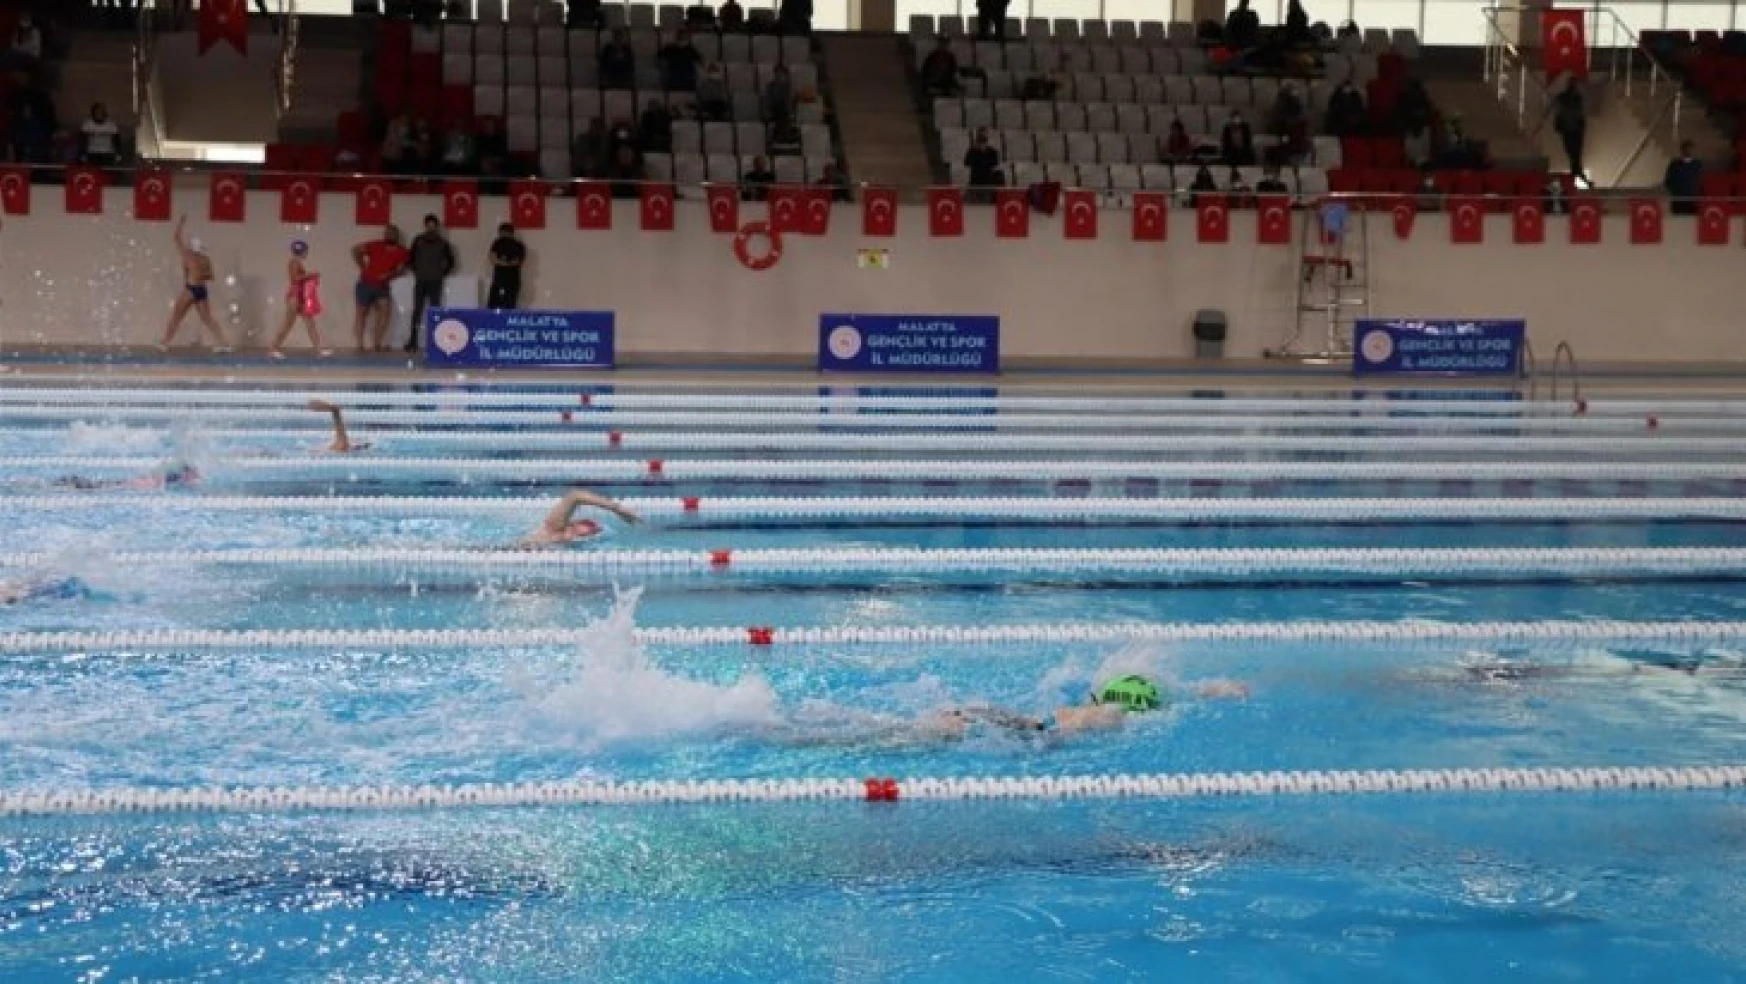 Malatya'da yeni yapılan havuzda ilk yüzme müsabakası yapıldı